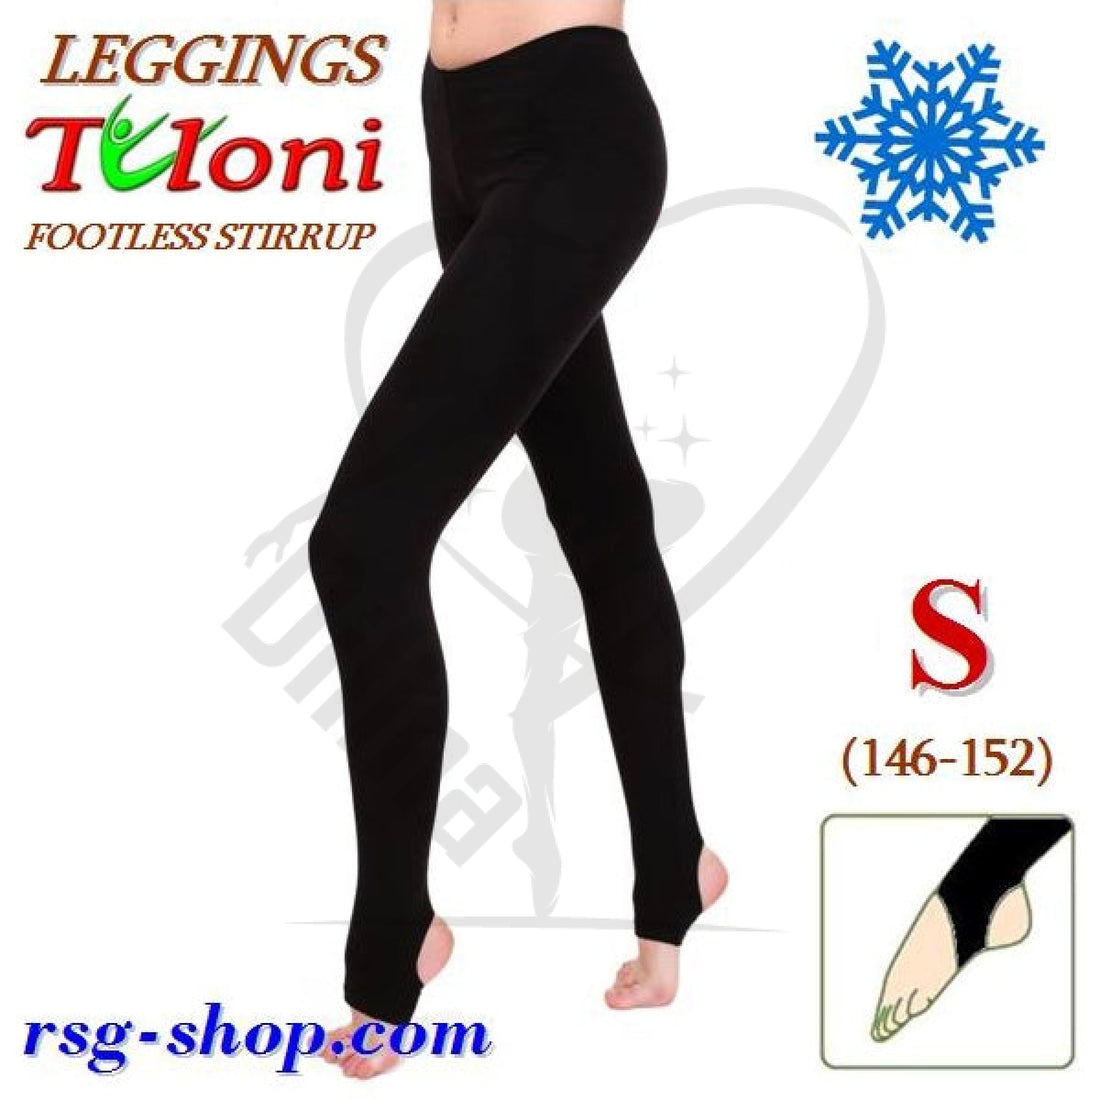 Tuloni Stirrup Winter Leggings S (146-152)